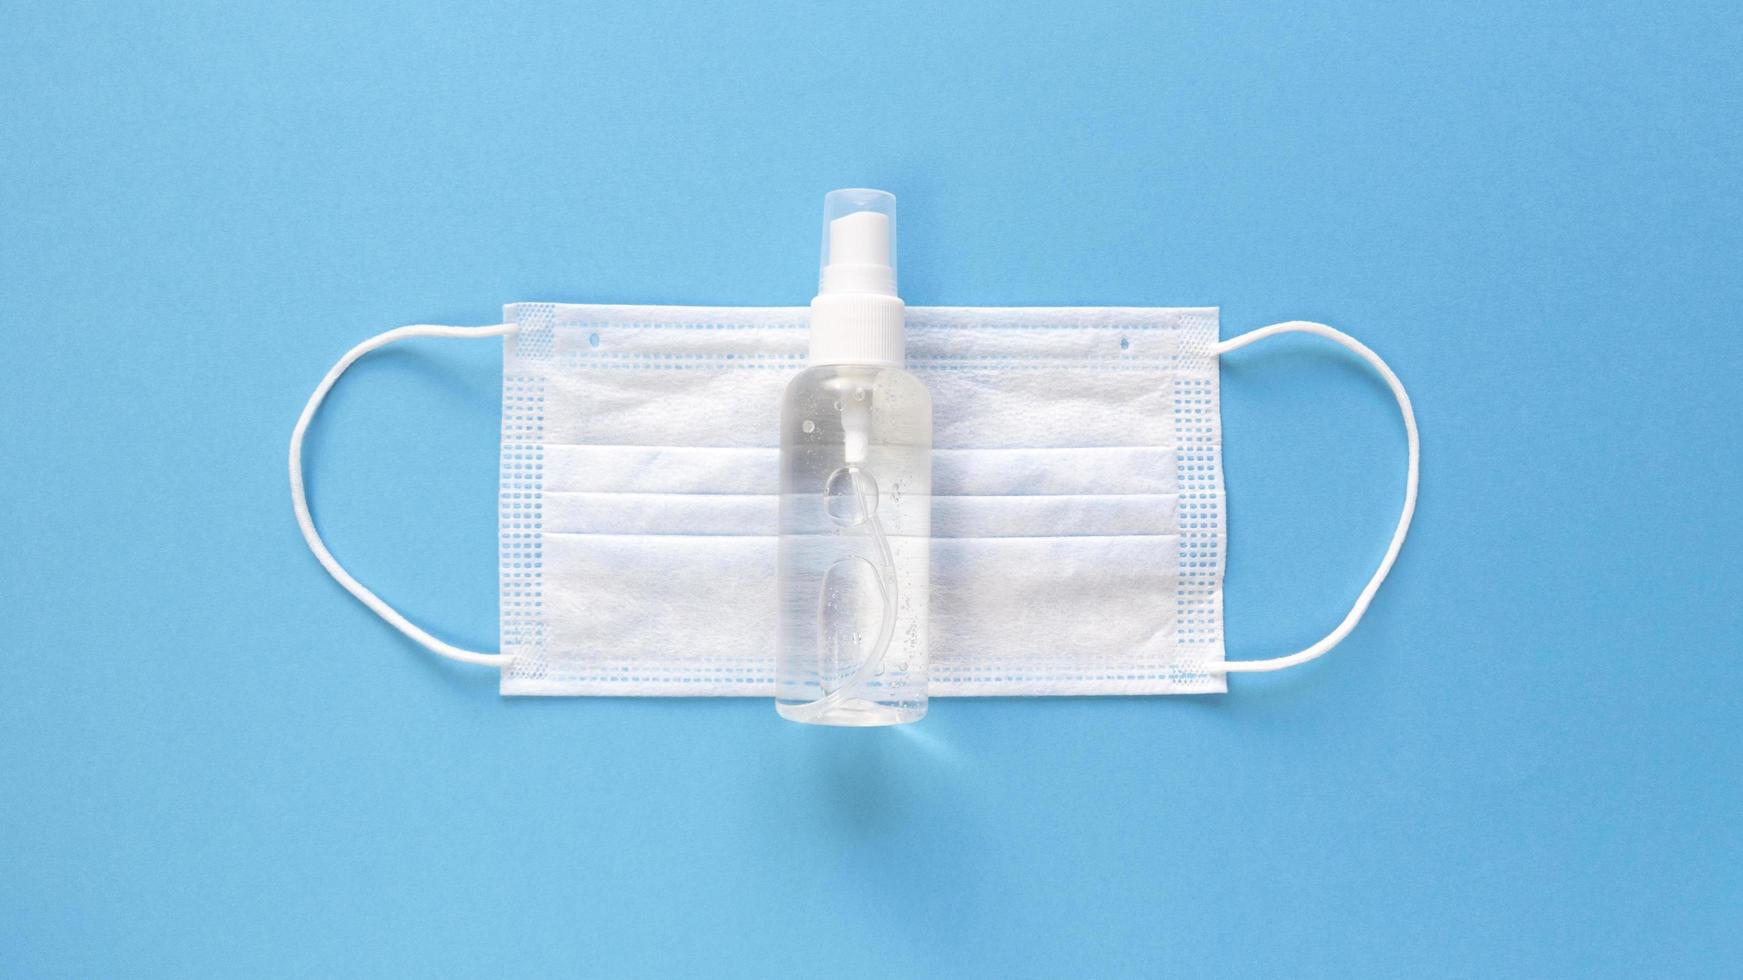 wit medisch masker en handdesinfecterend middel in een doorzichtige fles met een spuitdop in het midden van een blauwe achtergrond, eenvoudig plat leggen met pastel papier textuur medisch concept foto